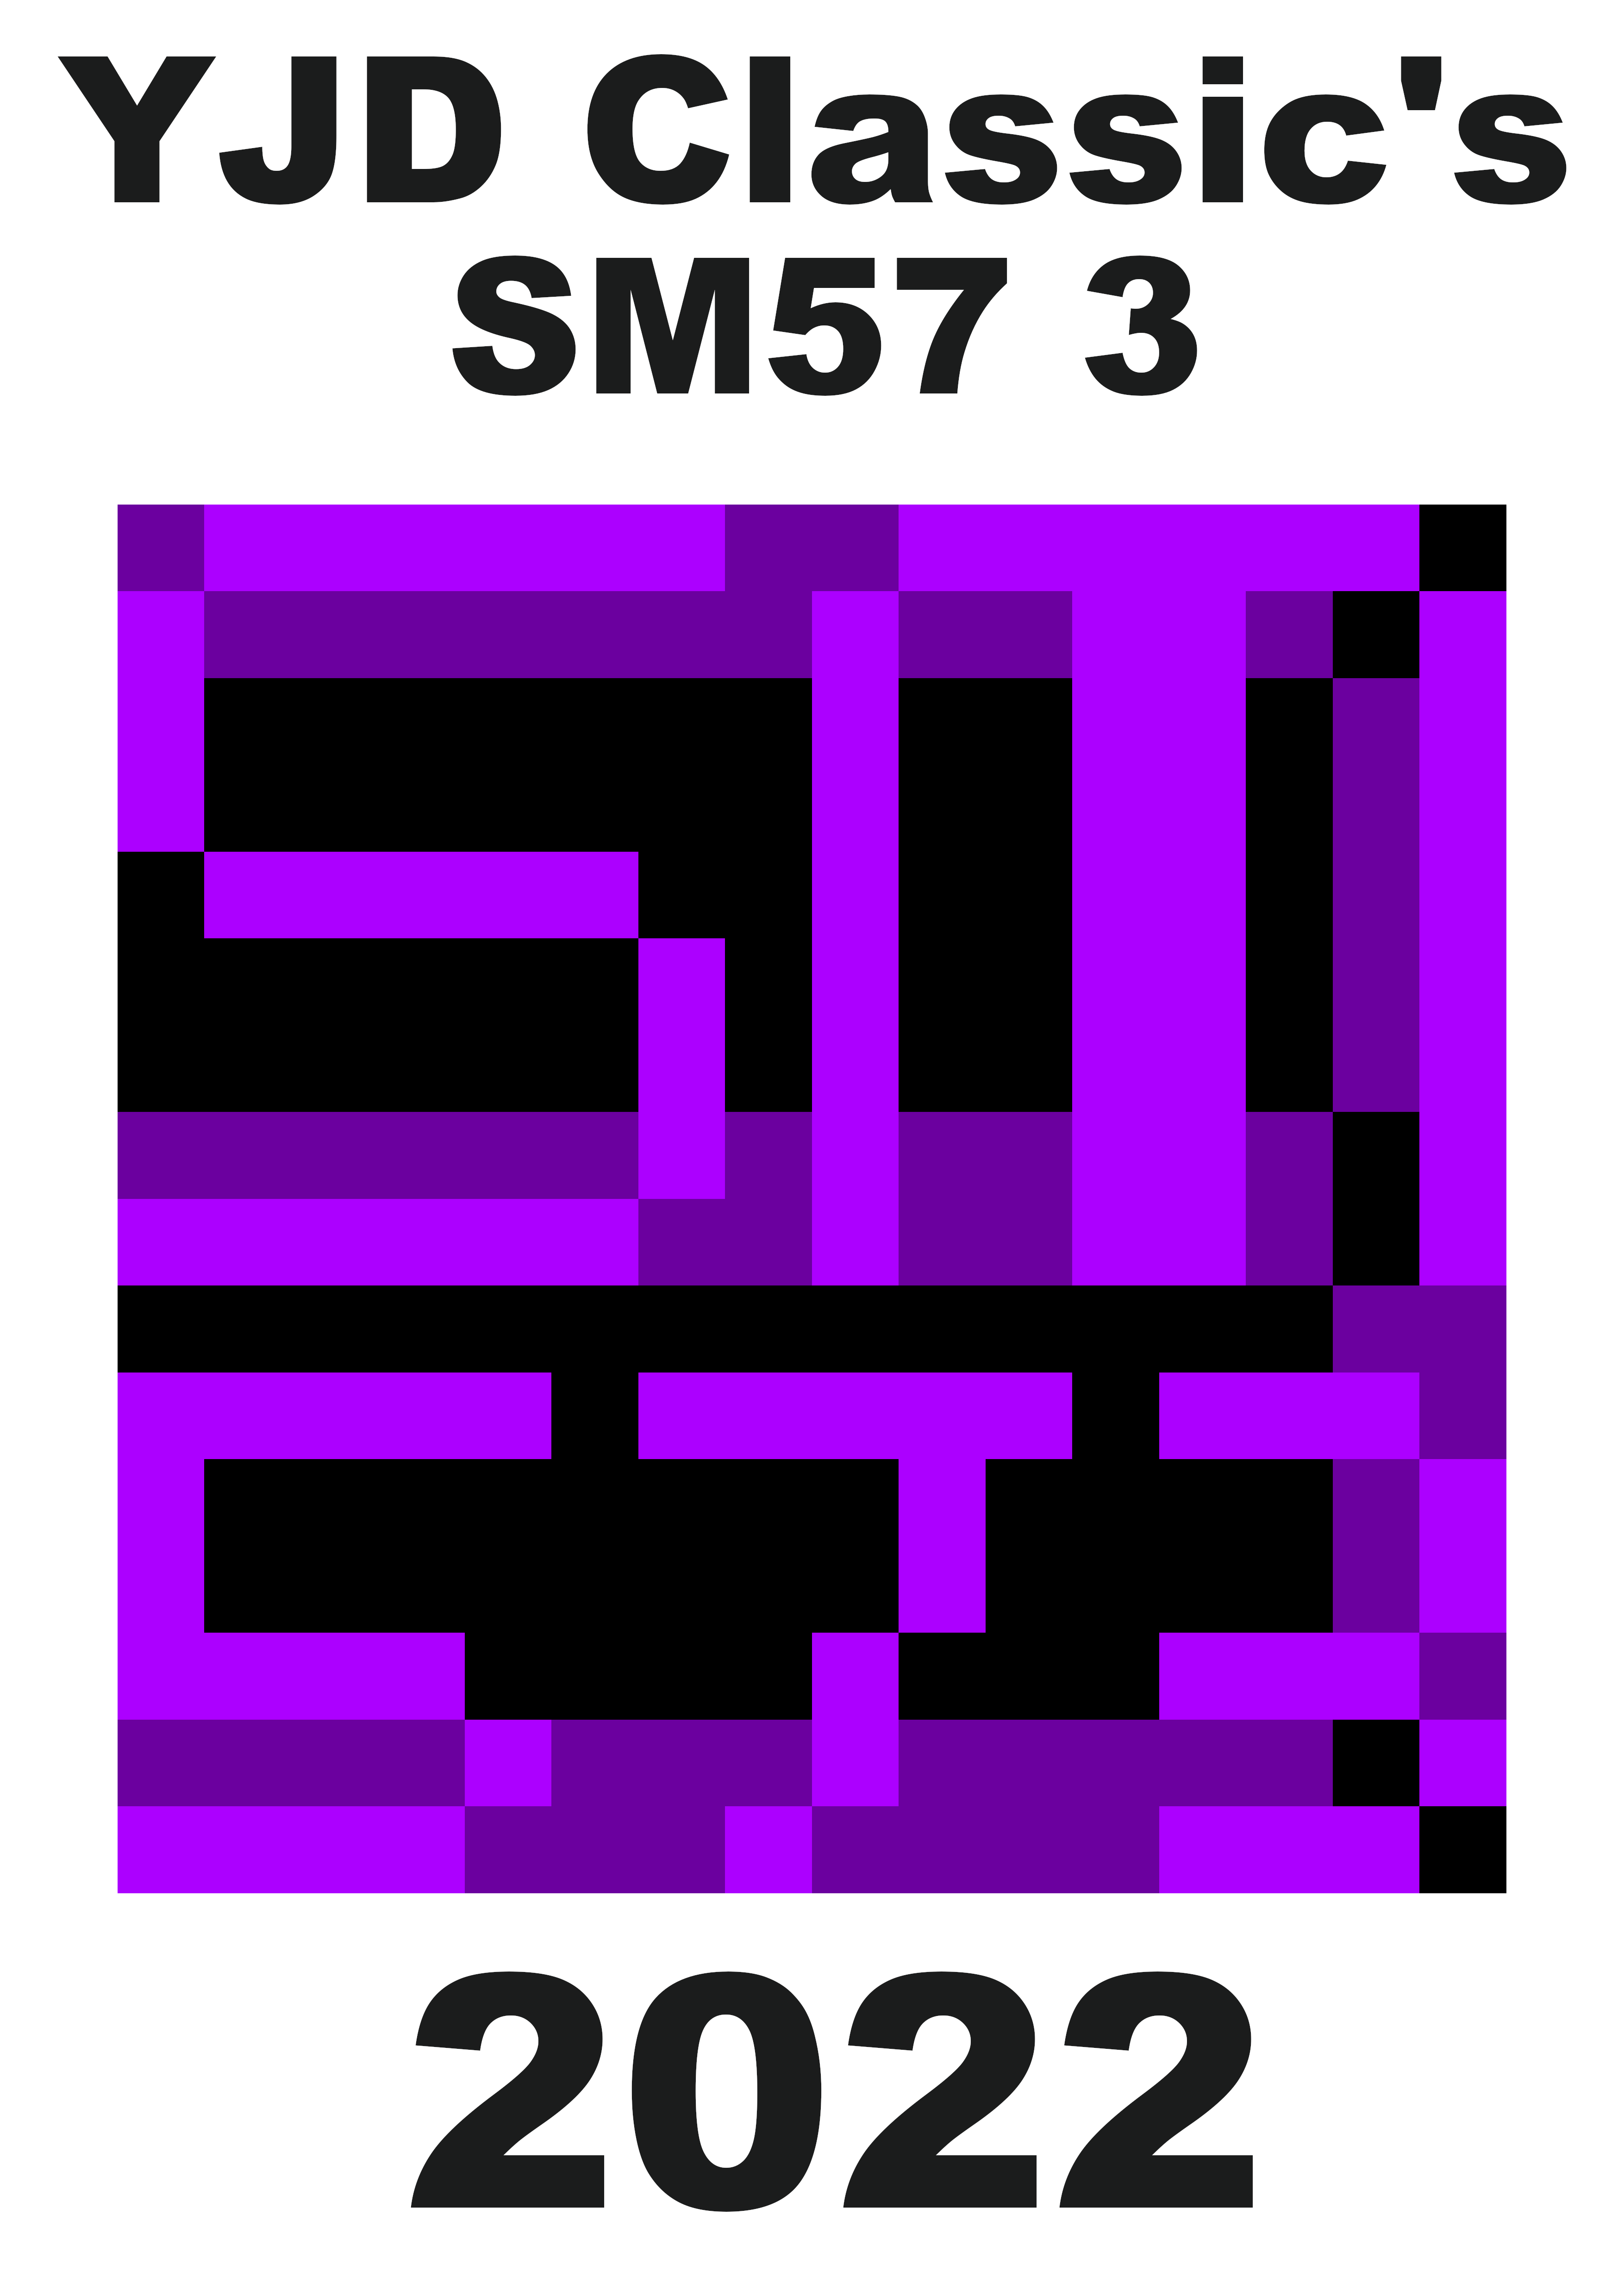 SM57 3